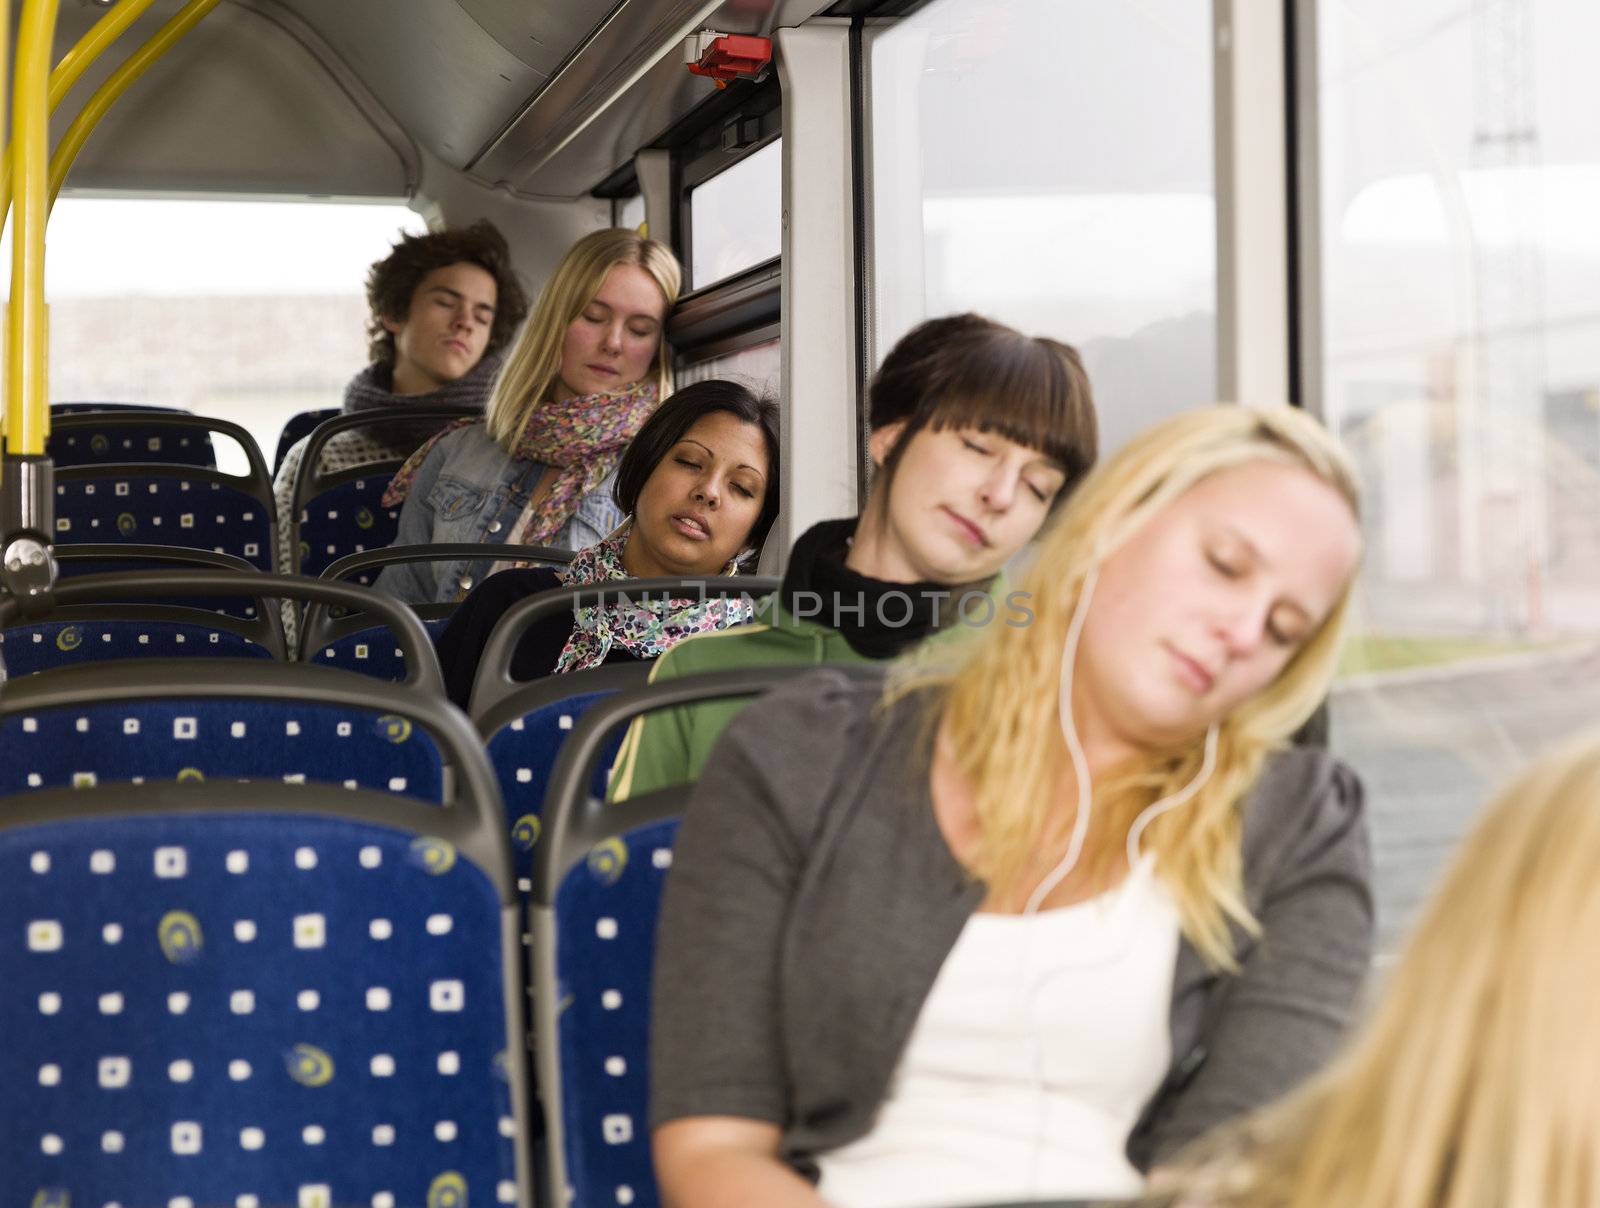 Sleeping on the bus by gemenacom